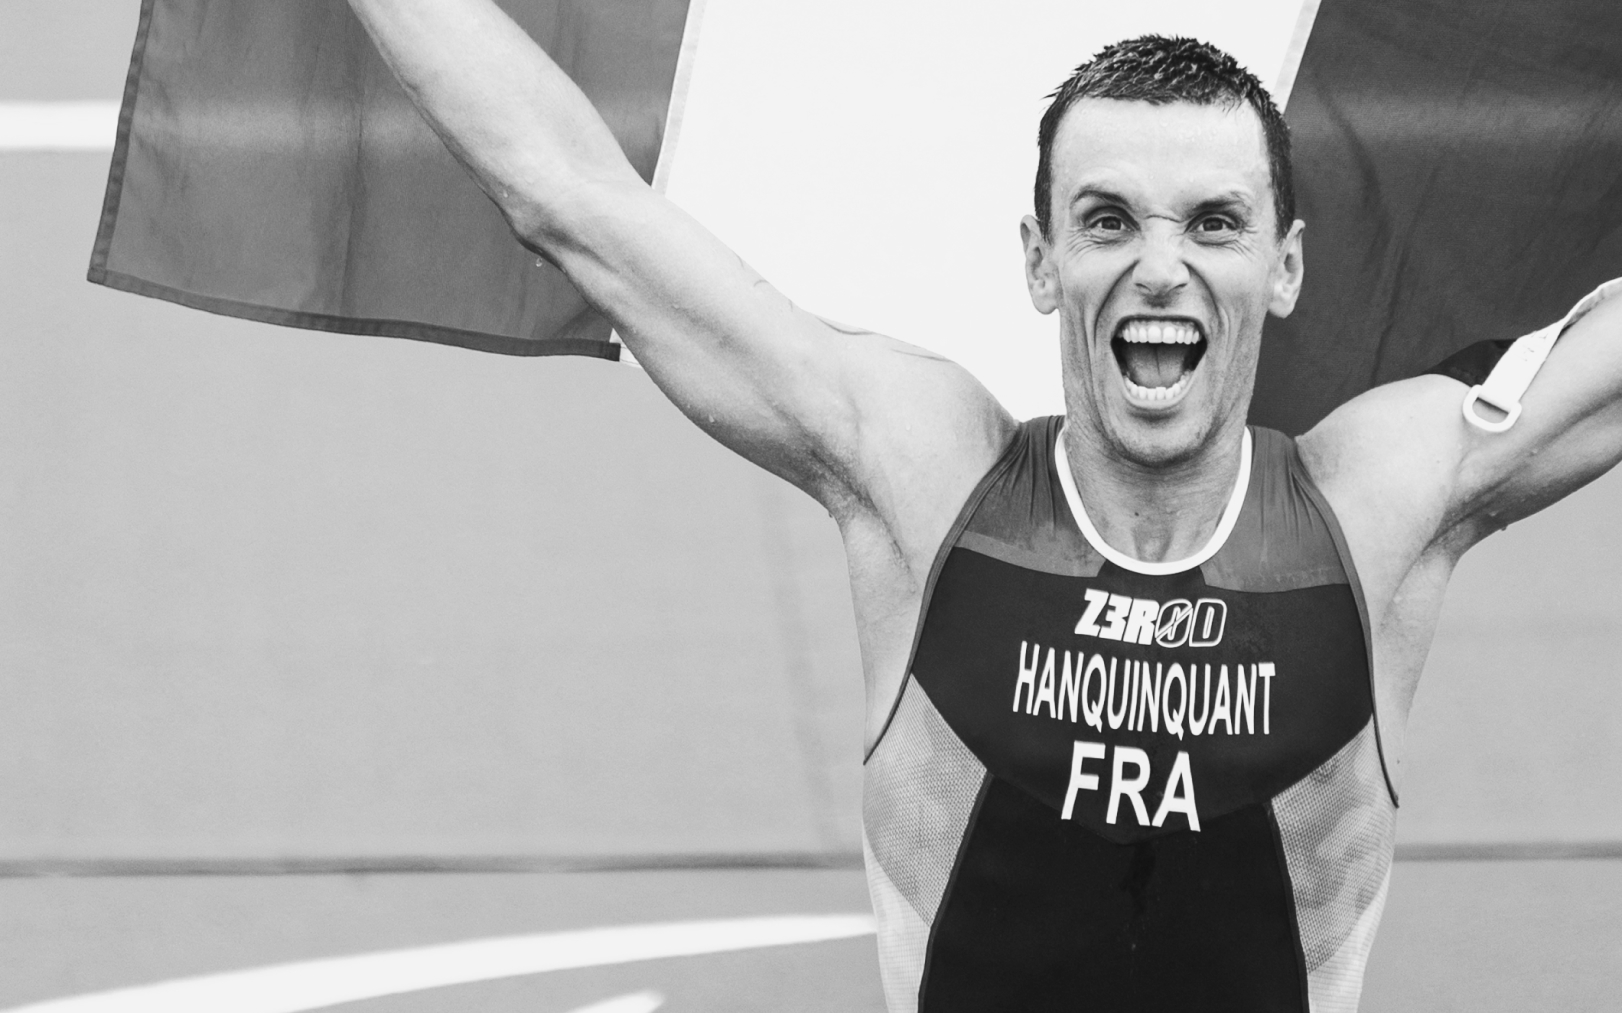 Le 28 août 2021 à Tokyo, Alexis Hanquinquant devient champion paralympique de paratriathlon. AFP/Charly Triballeau